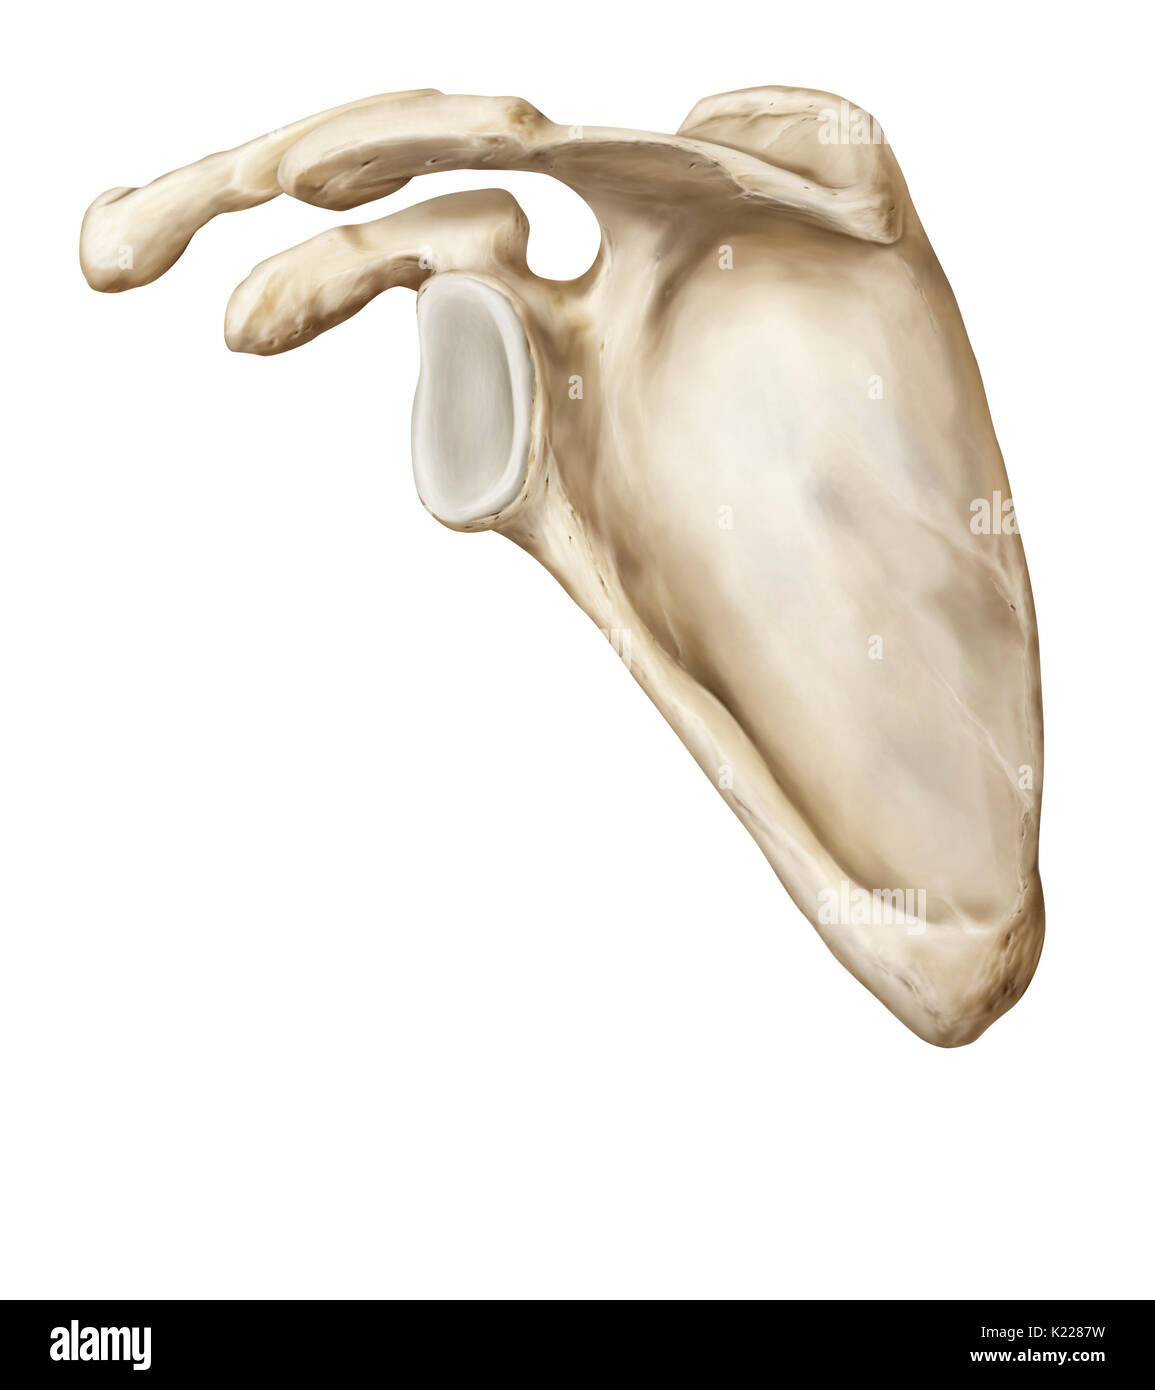 Paire d'os, de forme triangulaire, d'articuler avec la clavicule et l'humérus ; elle protège le thorax et sert de point d'insertion pour plusieurs les muscles du dos. Banque D'Images